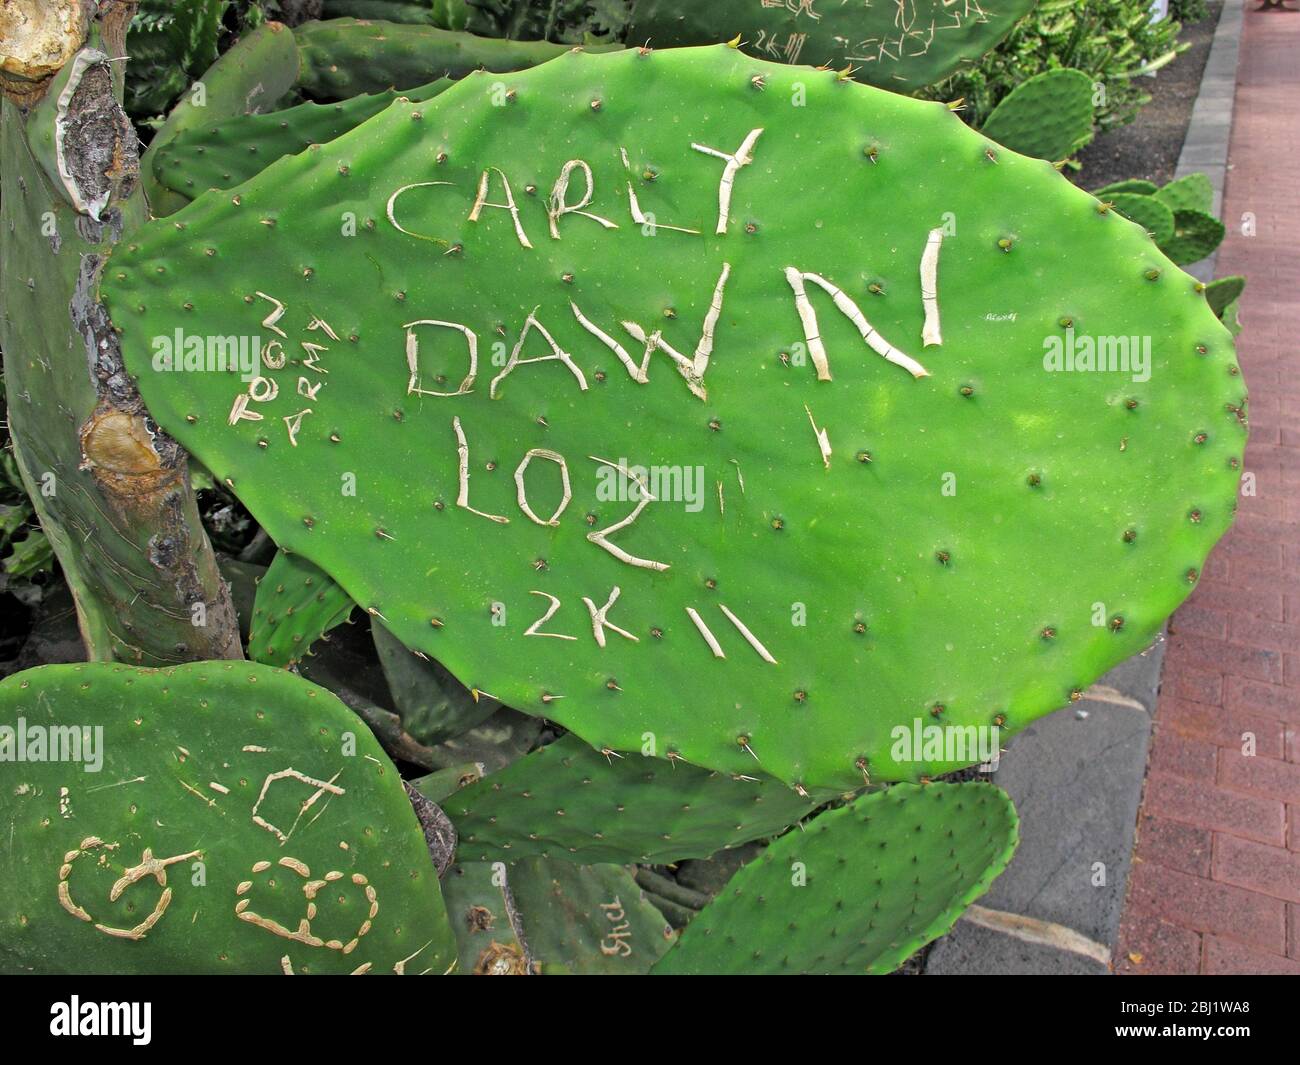 Carly Dawn,Toon Army,Loz,2k11,sculpté,sur cactus,graffiti Banque D'Images